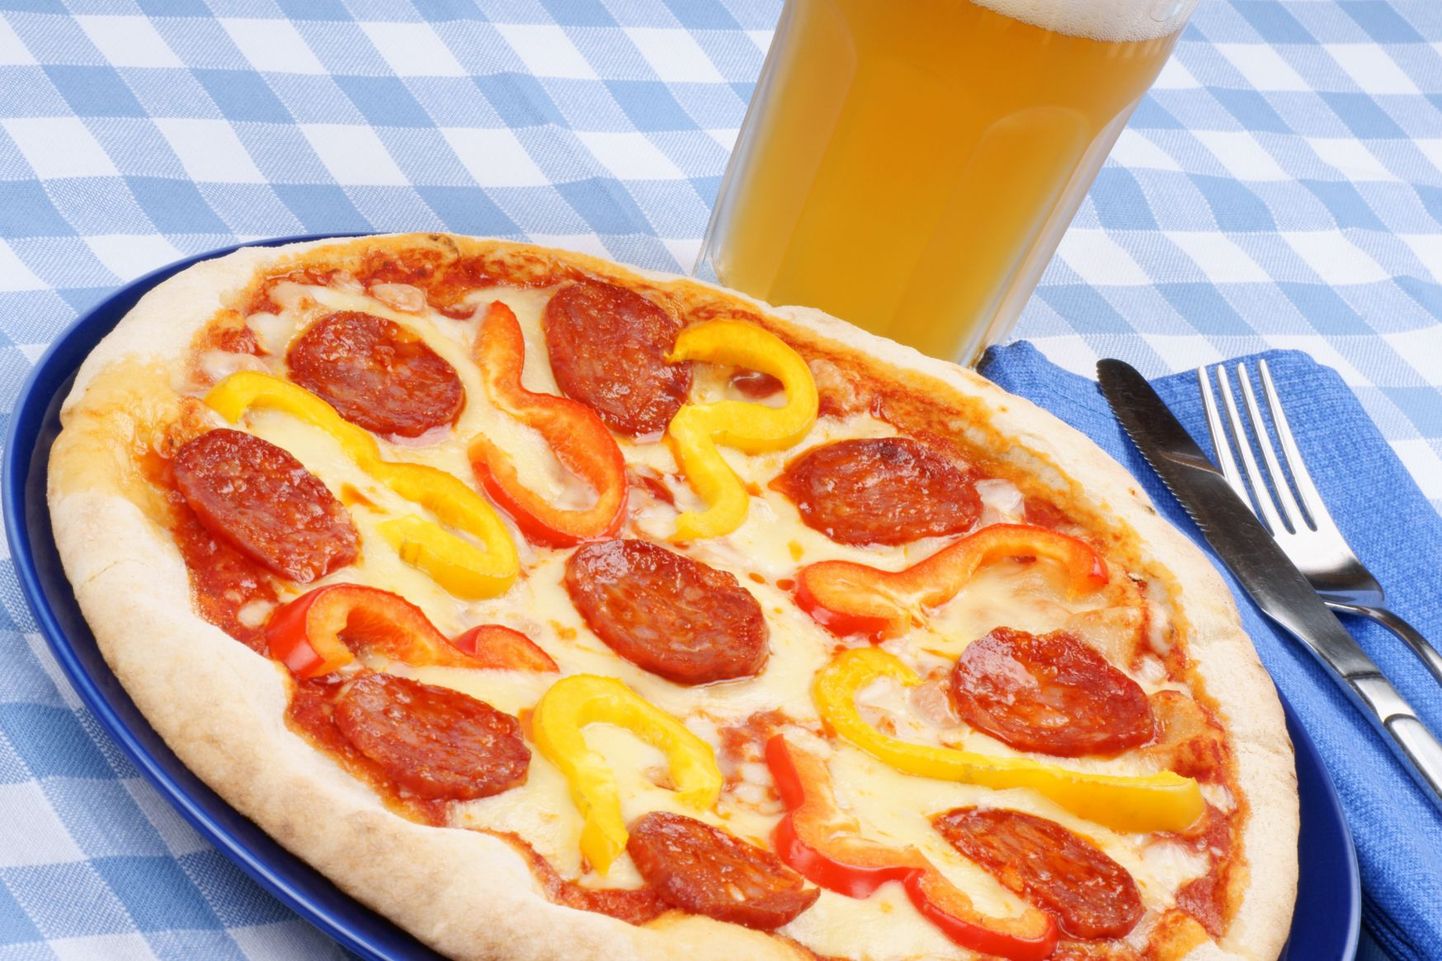 Ameeriklaste uuringu järgi on soolasisaldus suurim pepperoni pitsades.